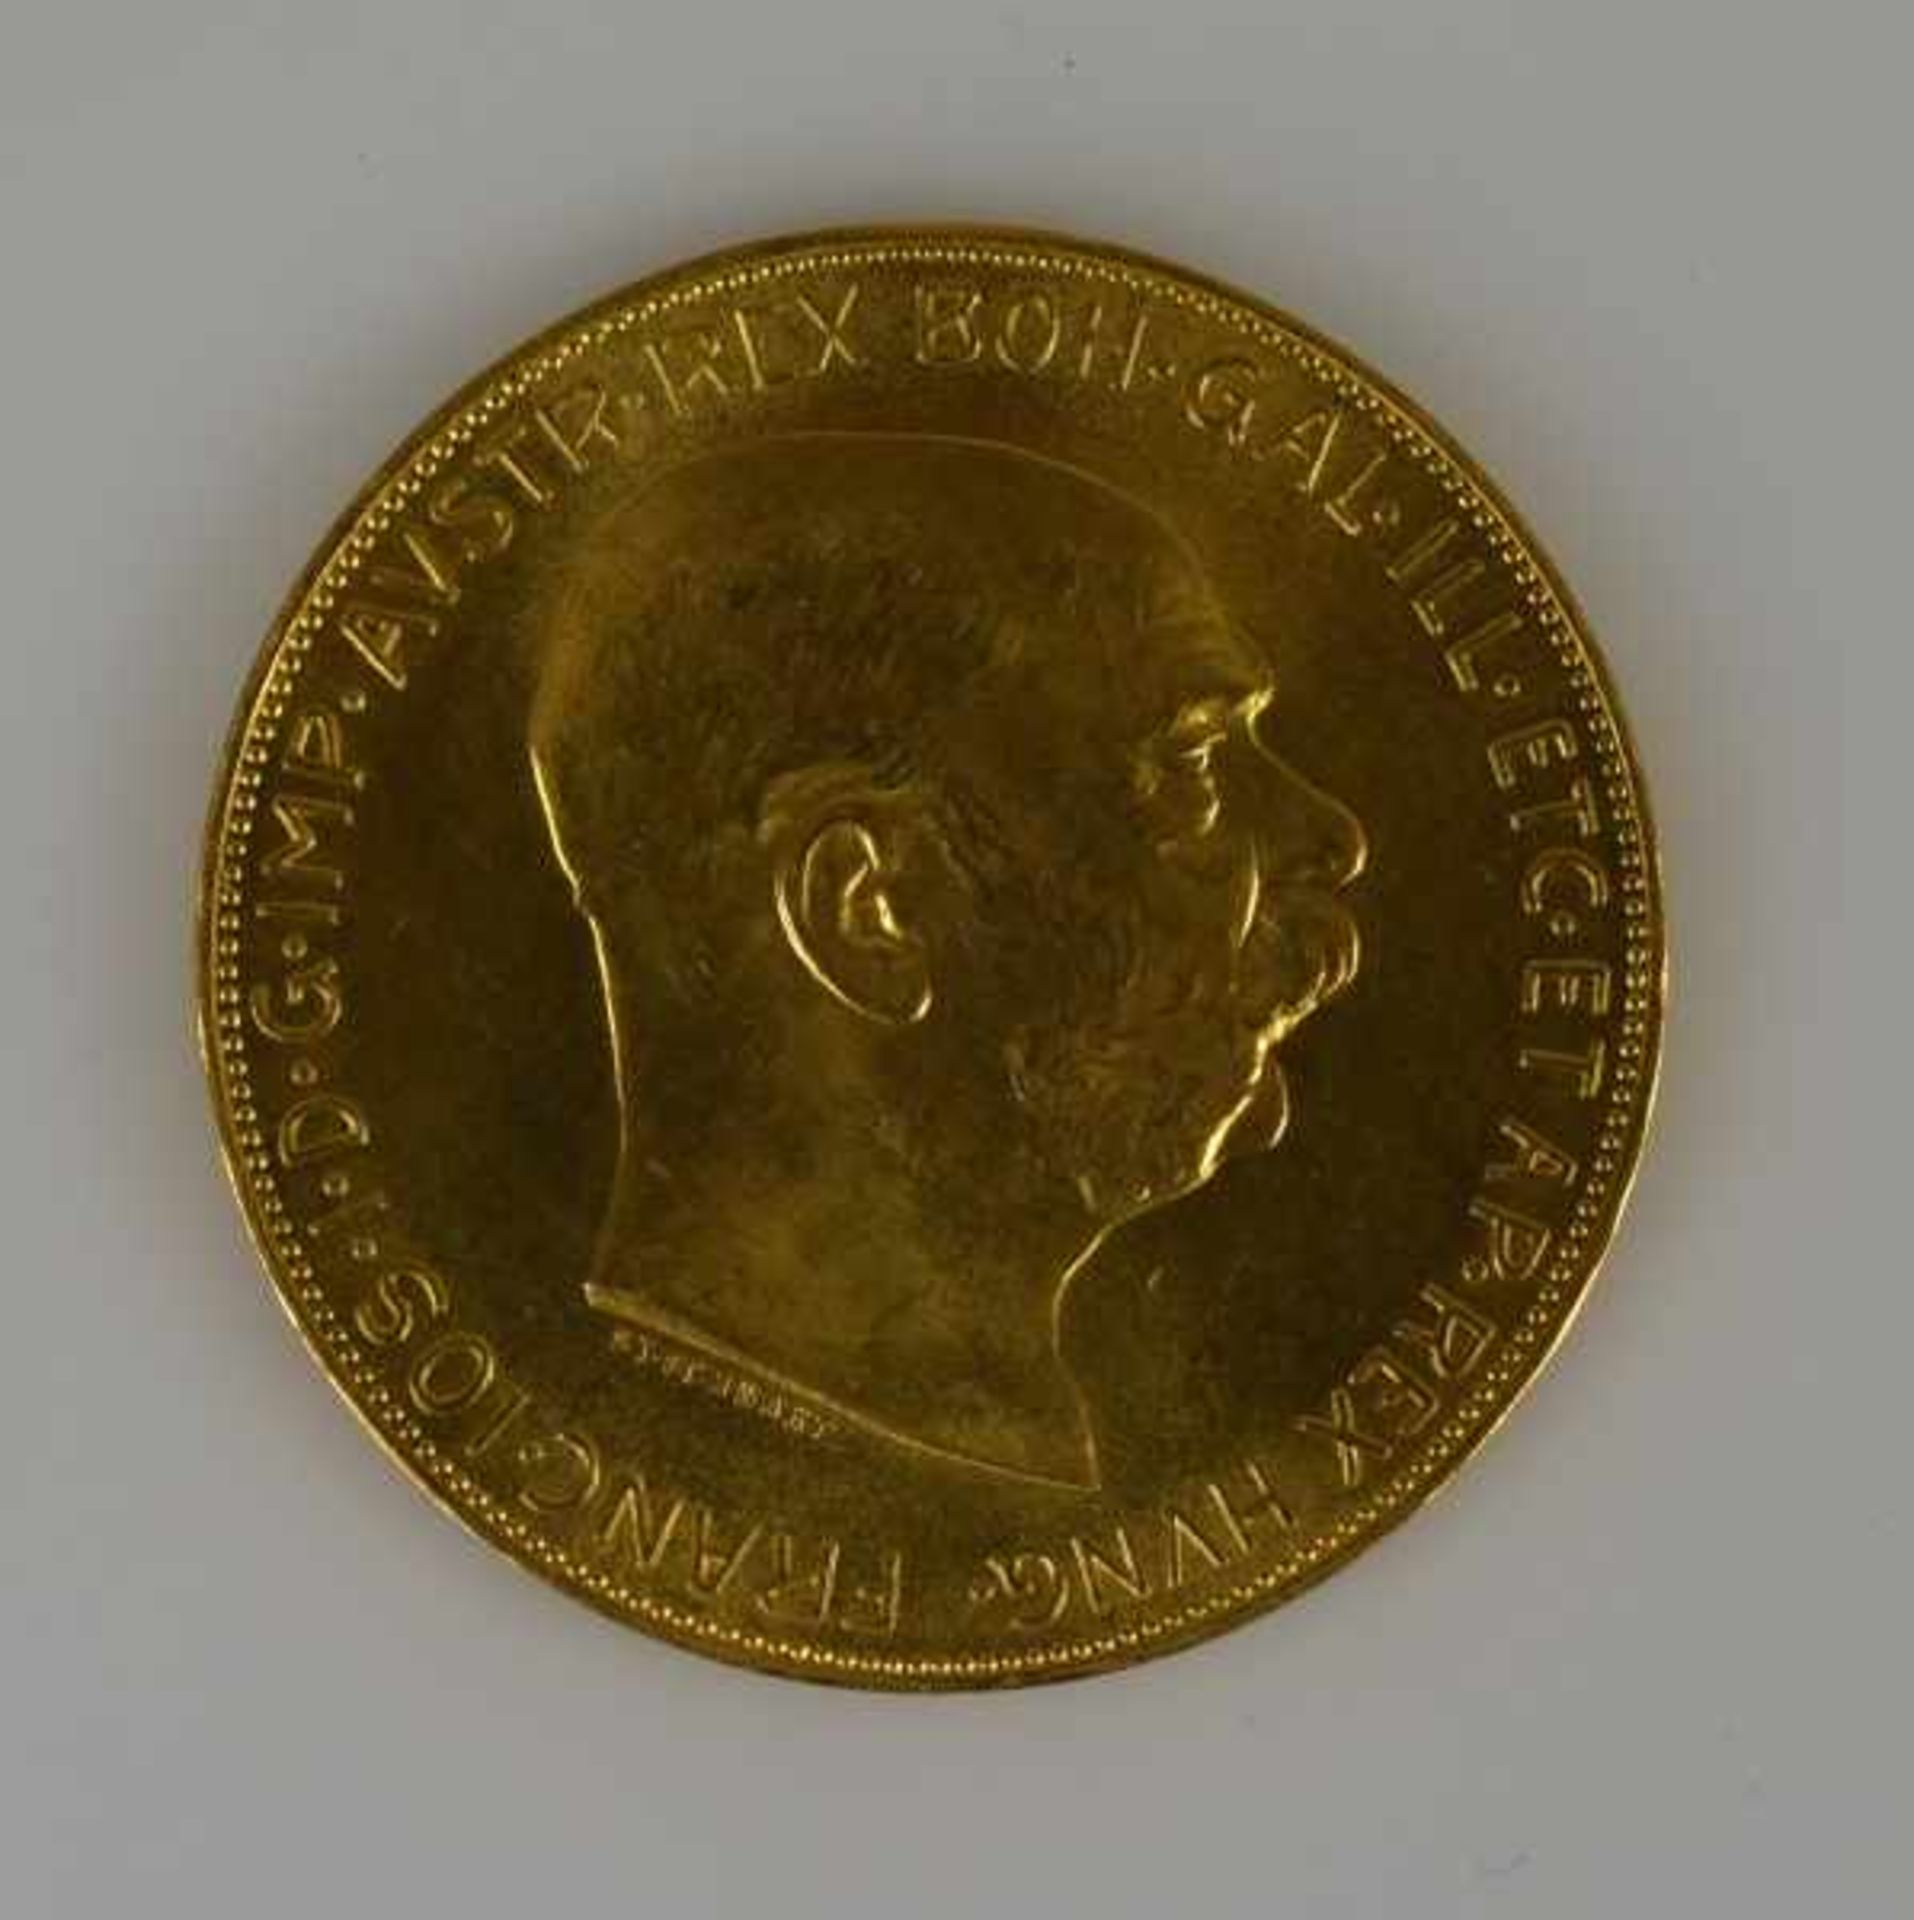 1 GOLDMÜNZE 100 Cor. (Kronenn) Österreich, Franz Josef III, 33,8g. - Bild 2 aus 2